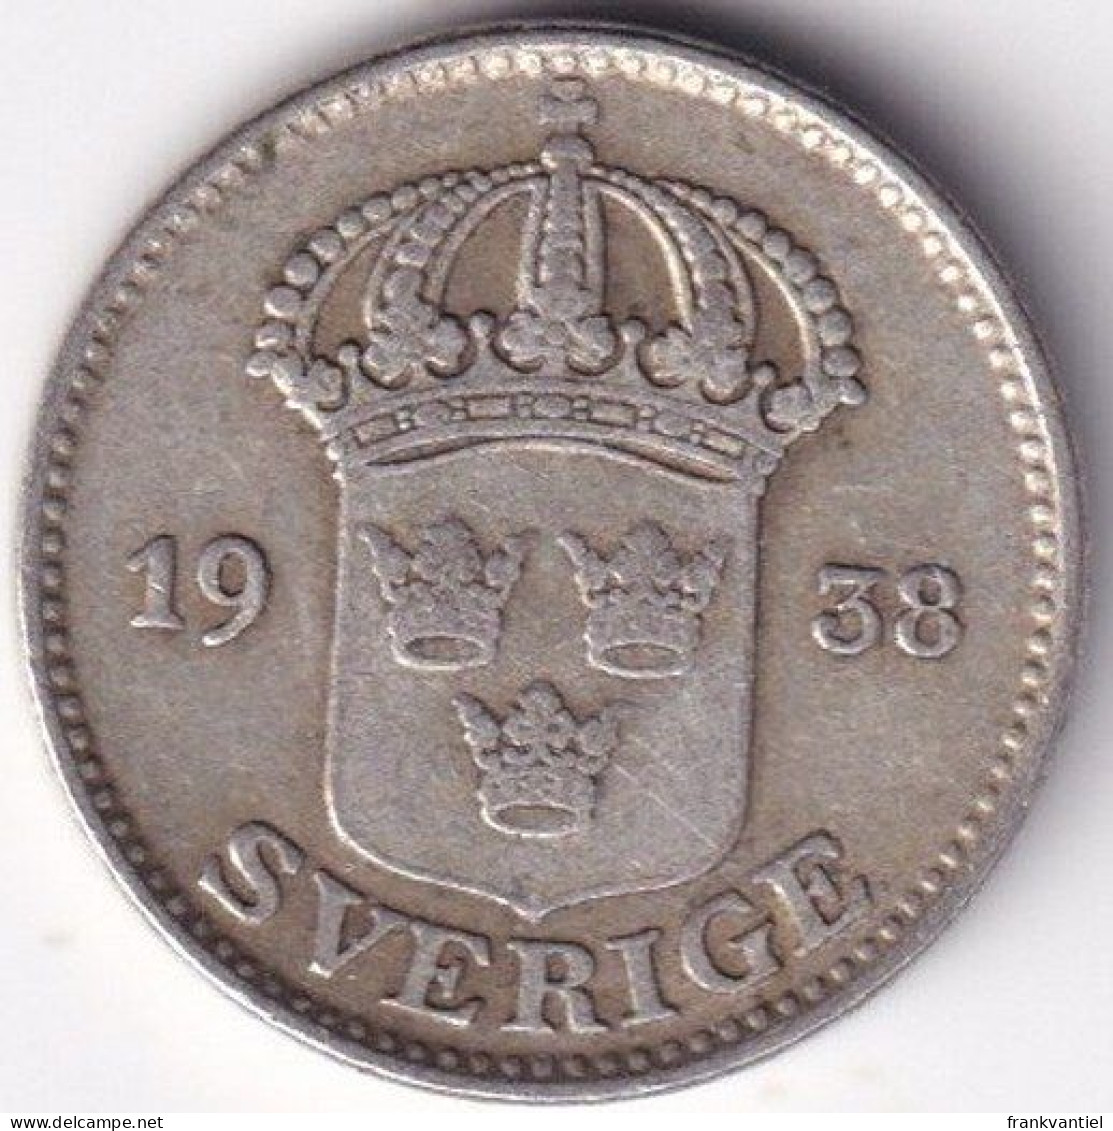 Sverige / Sweden KM-785 25 öre 1938 - Sweden